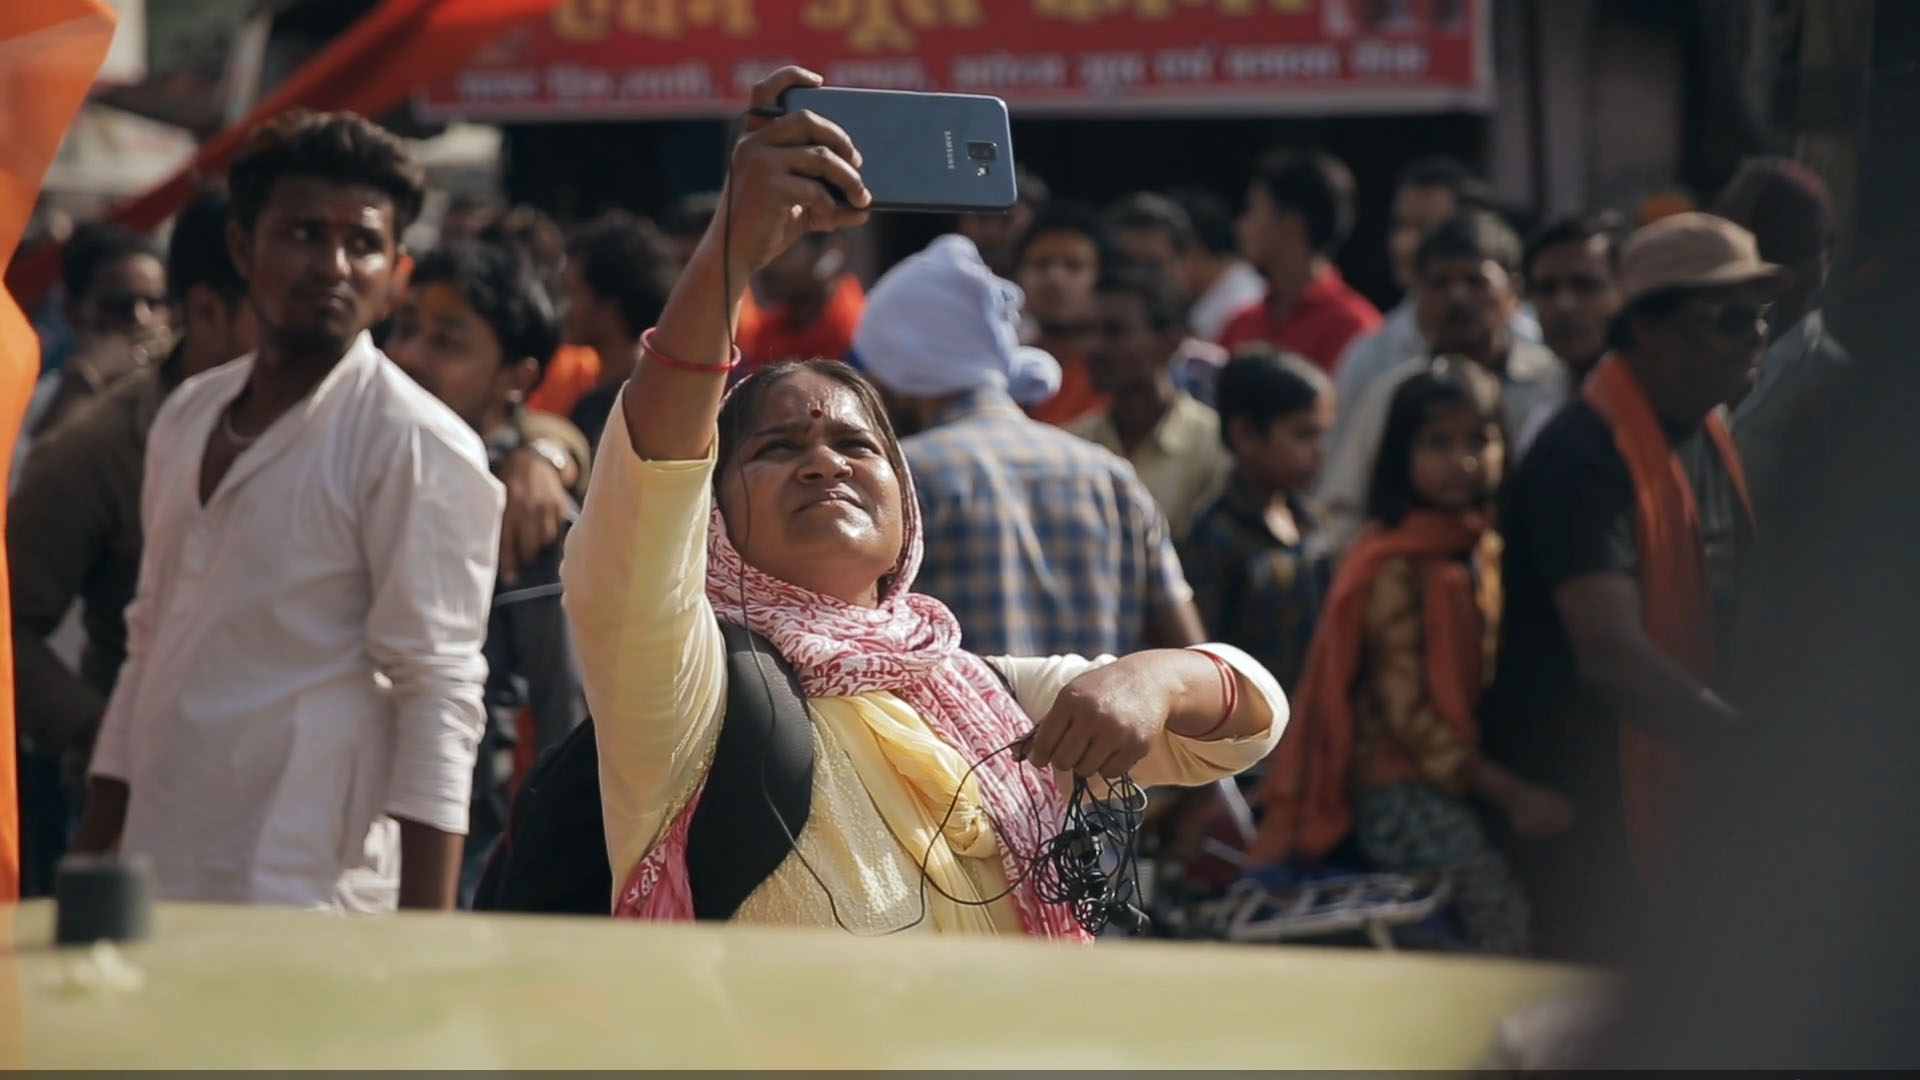 Cena do documentário Escrevendo com Fogo. A cena mostra uma mulher indiana filmando algo com o celular apontado para cima.